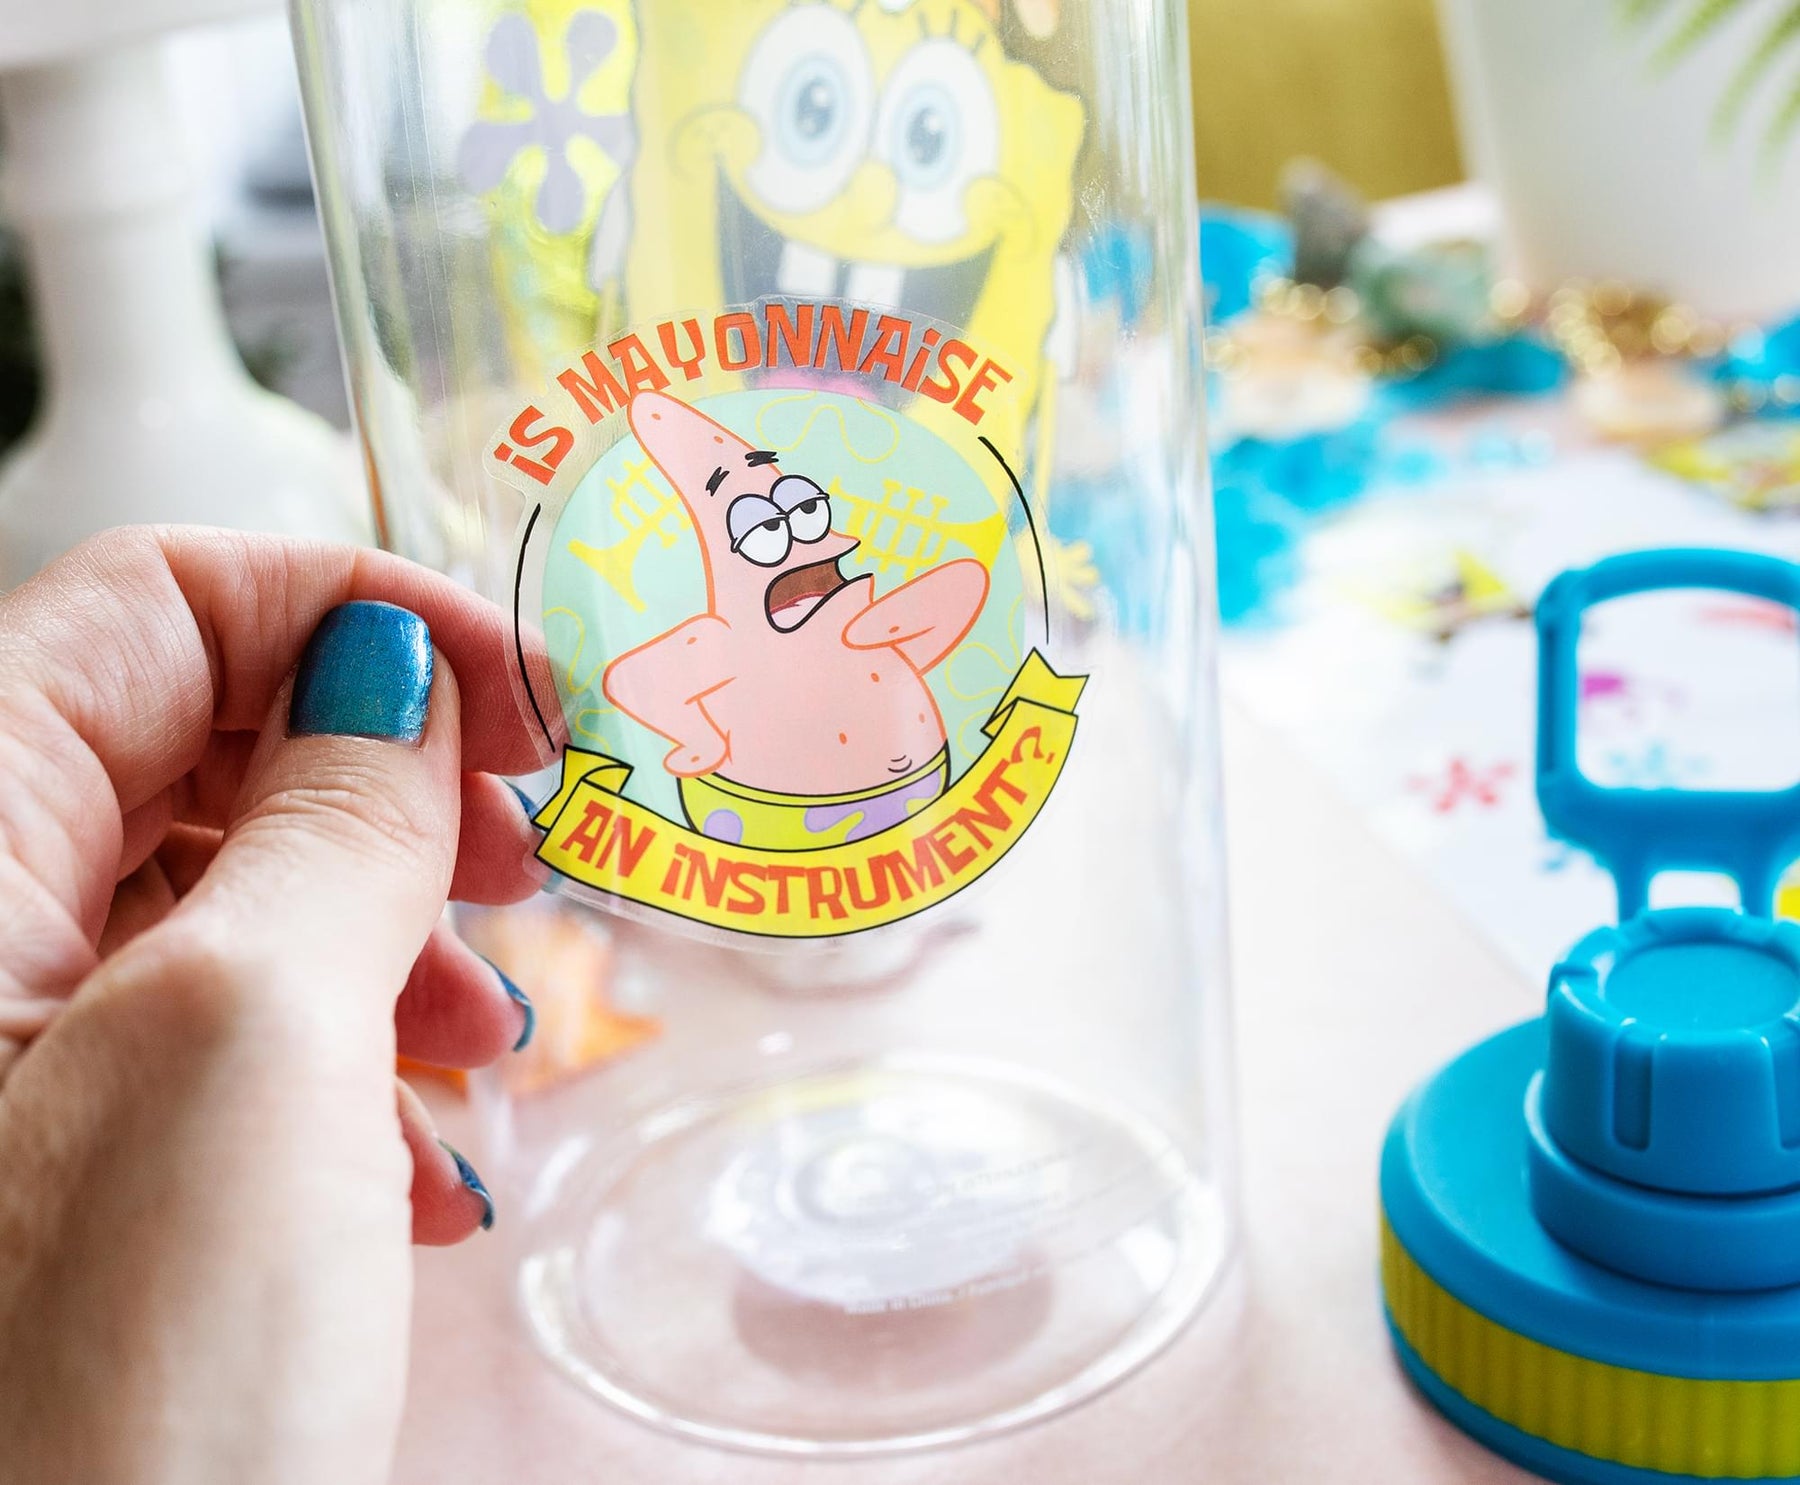 SpongeBob  Jewel Plast - Manufacturer & Supplier of SpongeBob Lunch Box & Water  Bottles